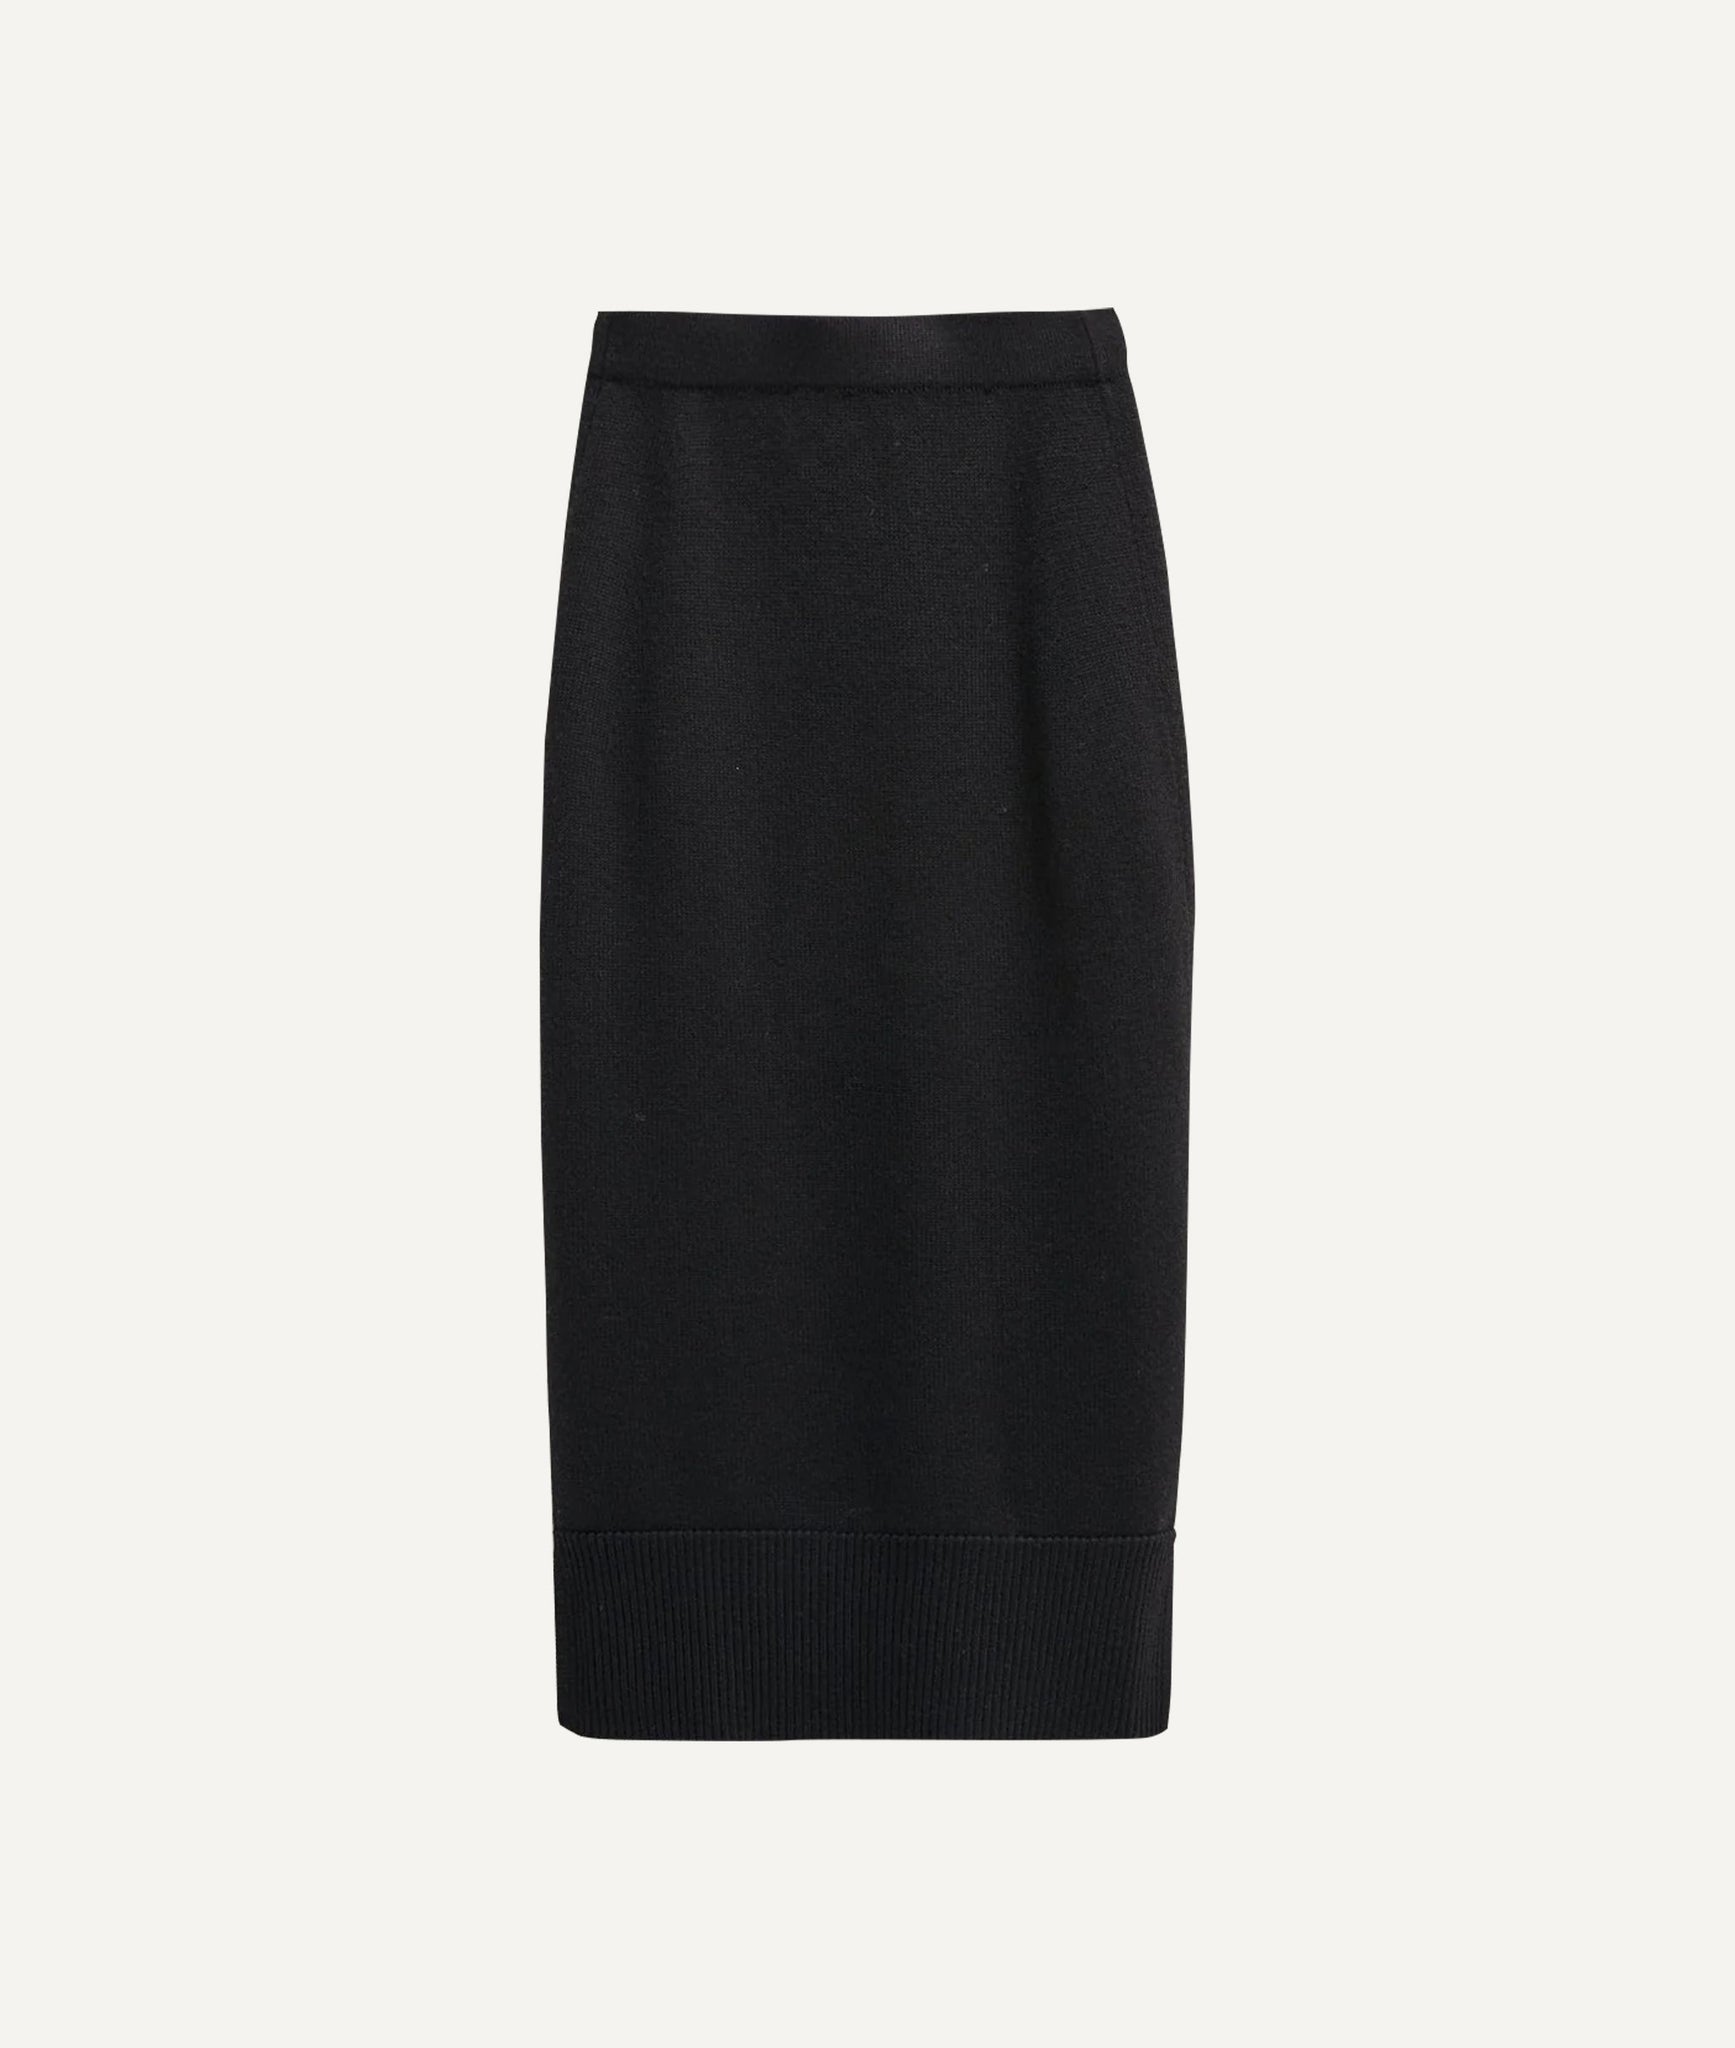 The Merino Wool Pencil Skirt